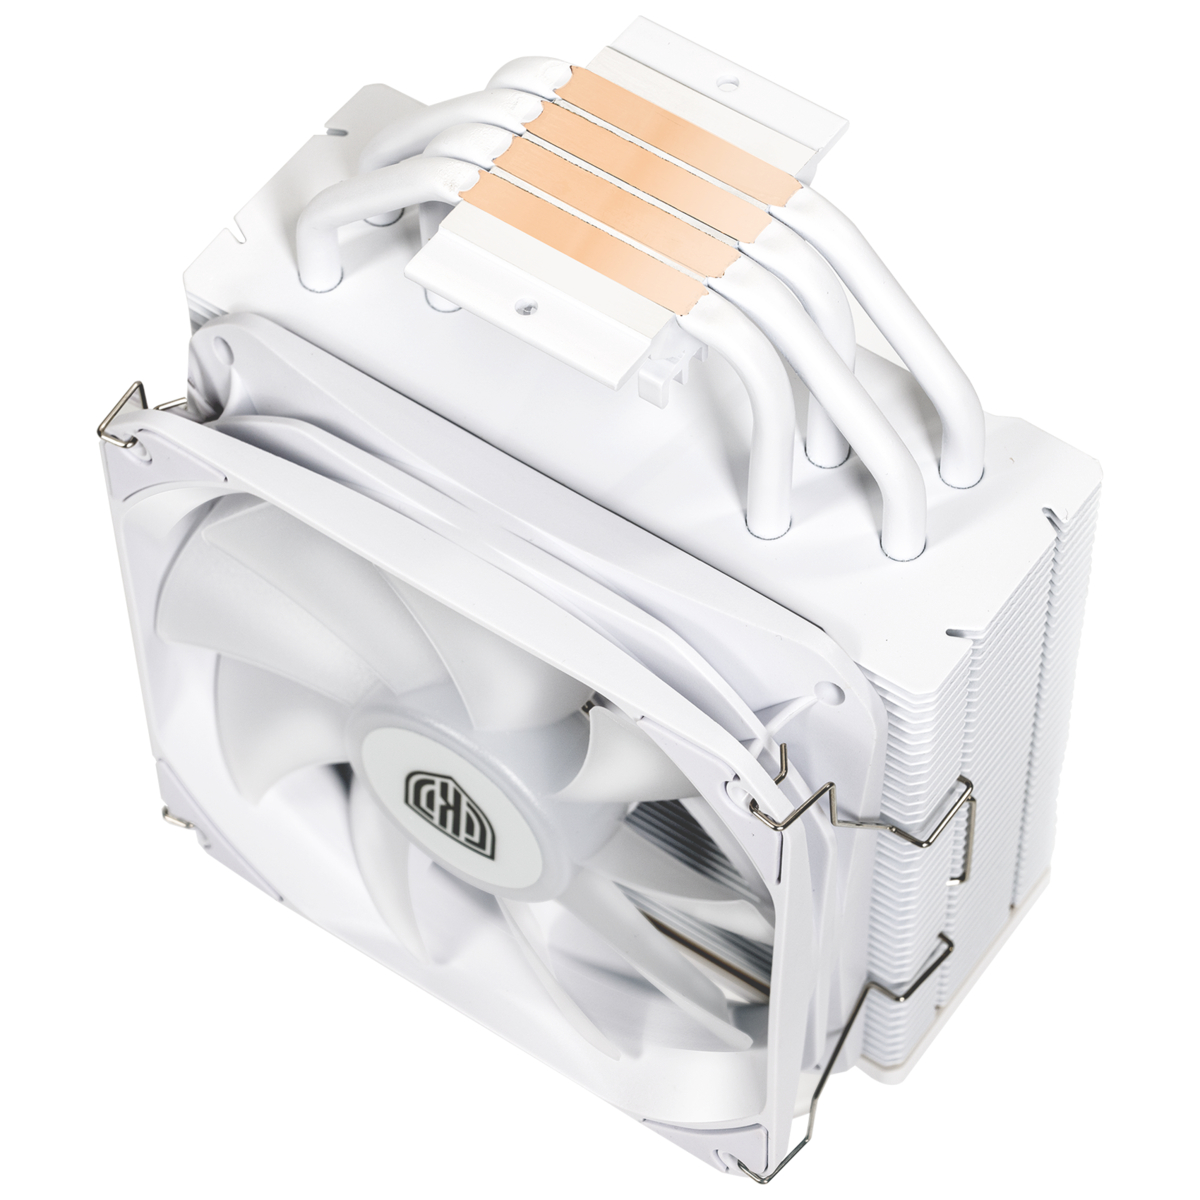 Kolink - Cooler CPU Kolink Umbra EX180W White Edition ARGB - 120mm